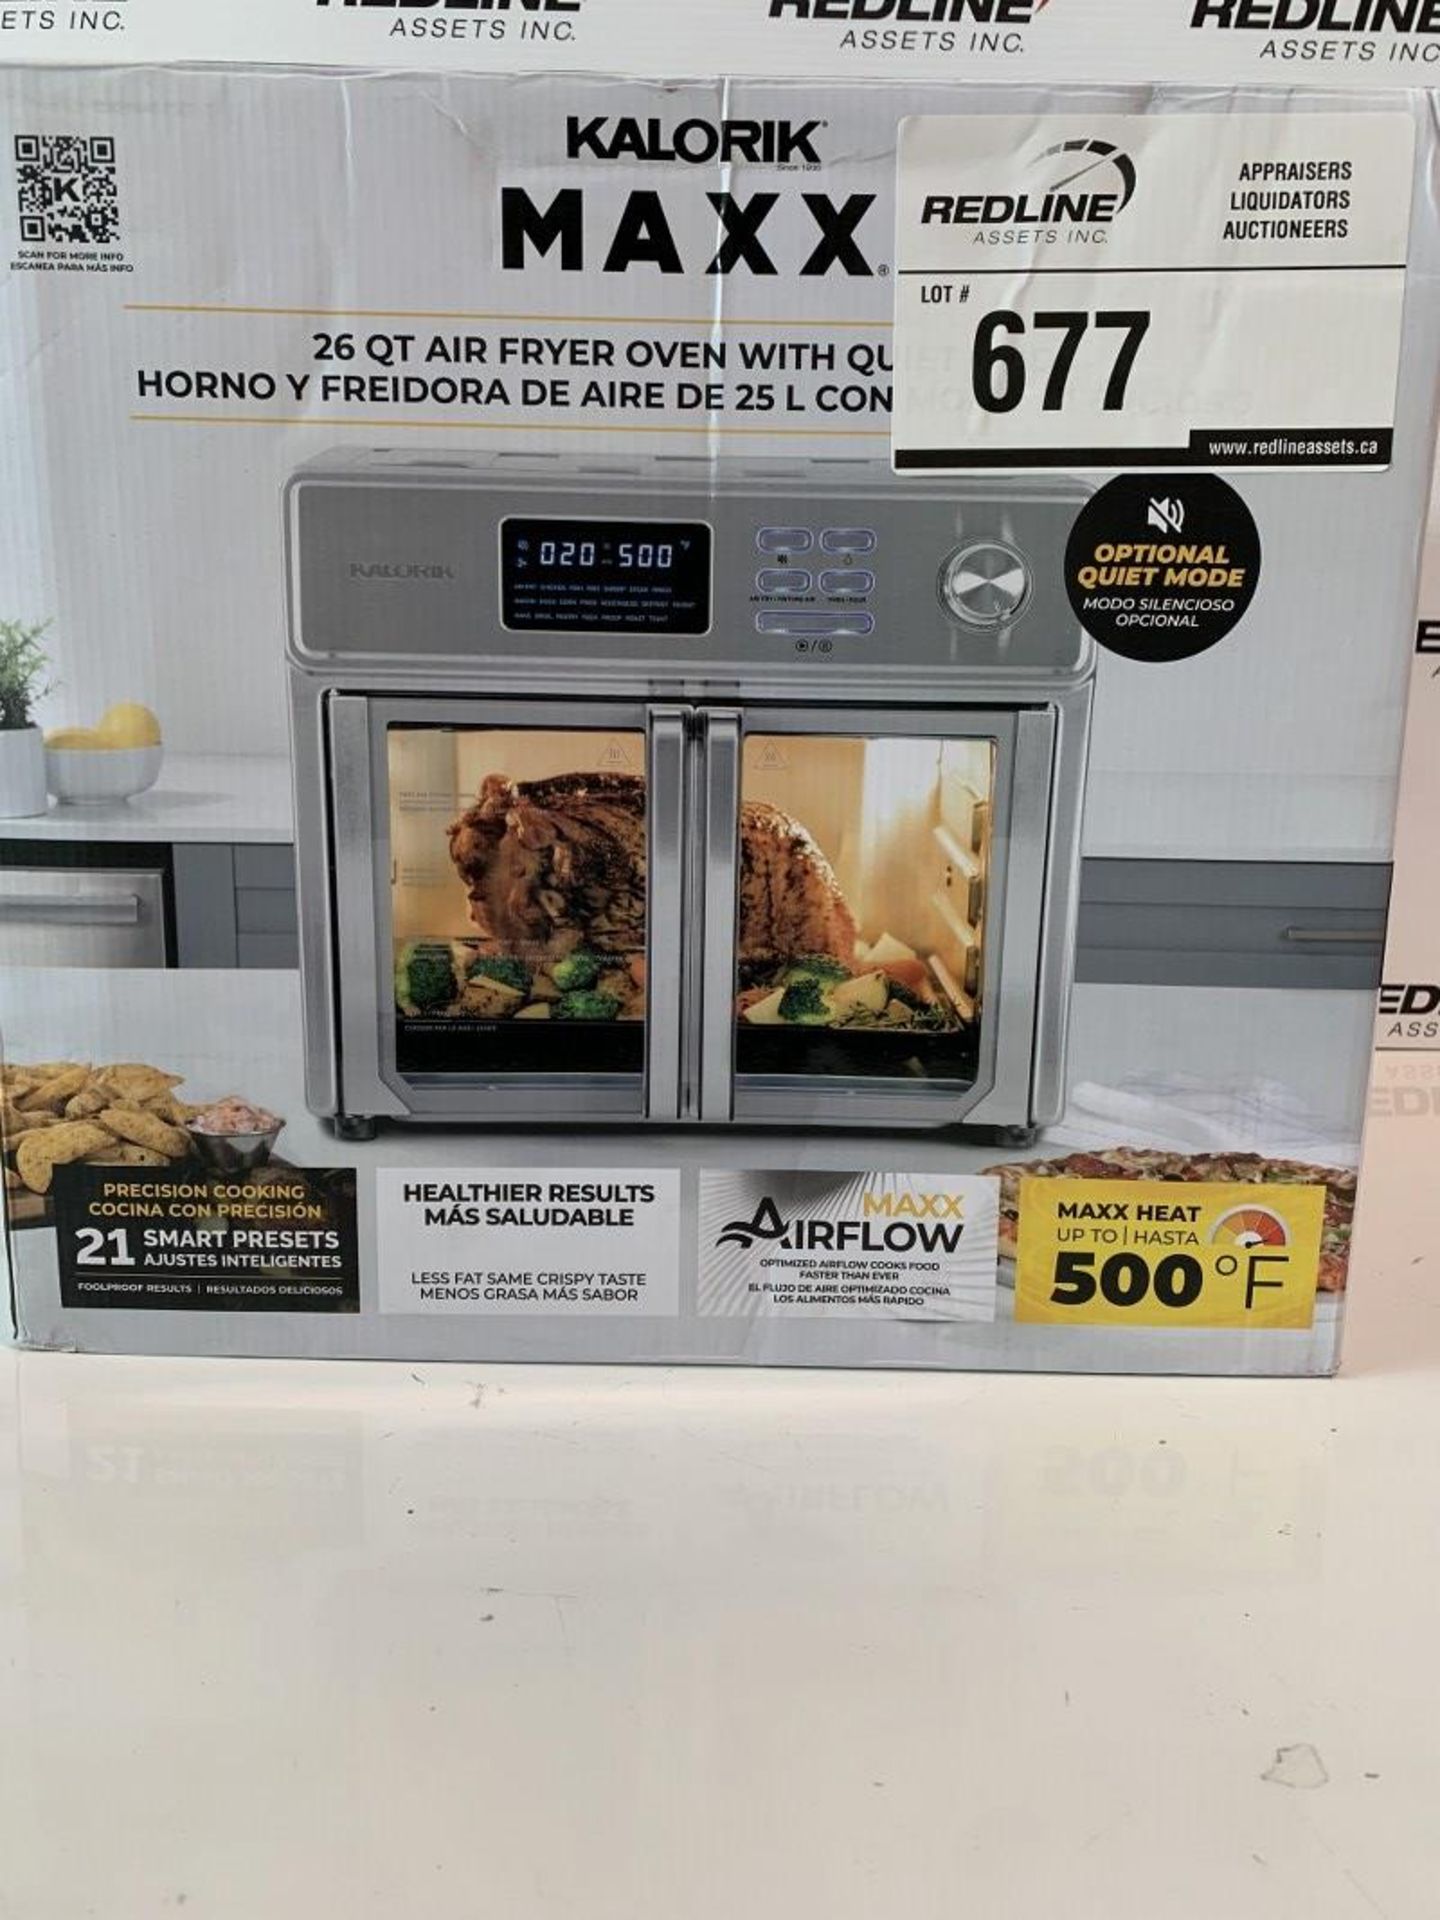 Kalorik - Maxx - 26Qt Air Fryer Oven - Image 2 of 3